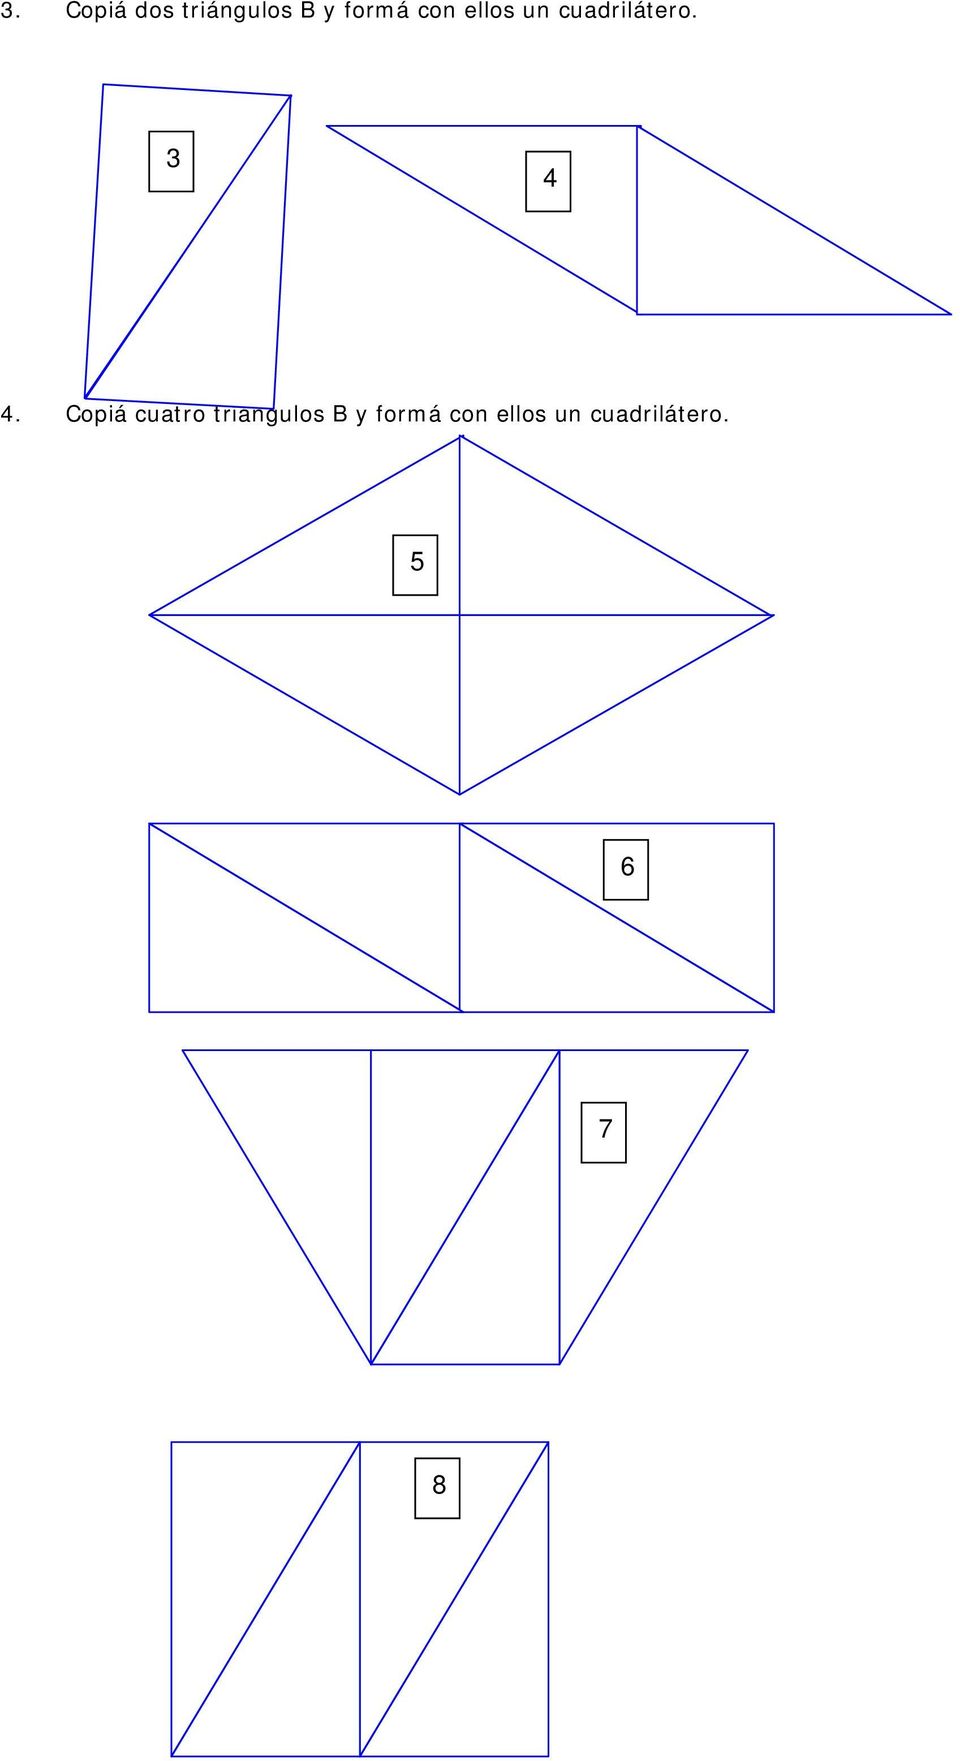 Copiá cuatro triángulos B y formá